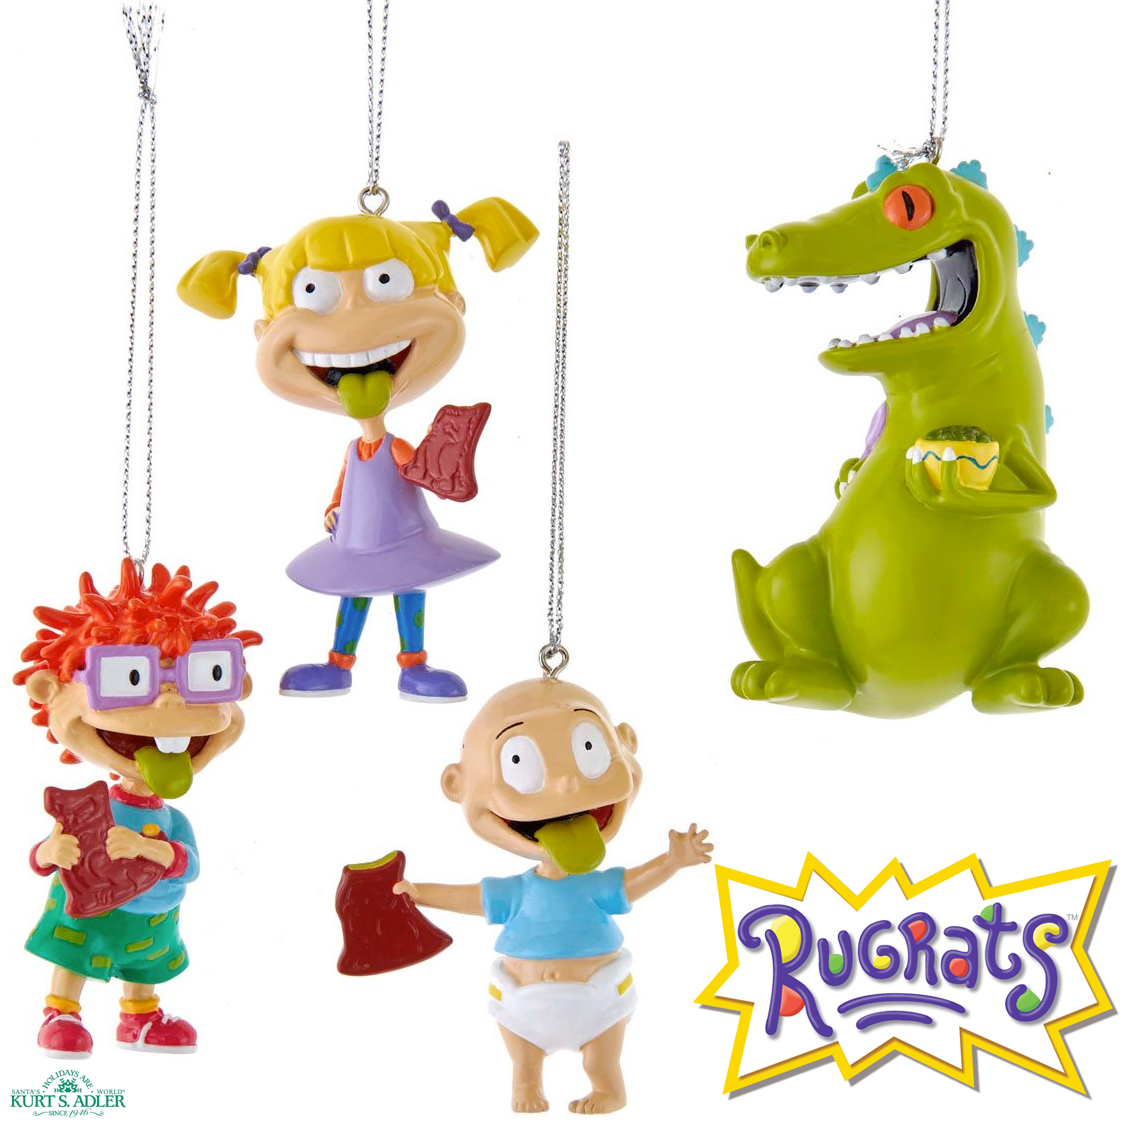 Enfeites de Natal Rugrats: Os Anjinhos com Angelica, Chuckie, Tommy e Reptar